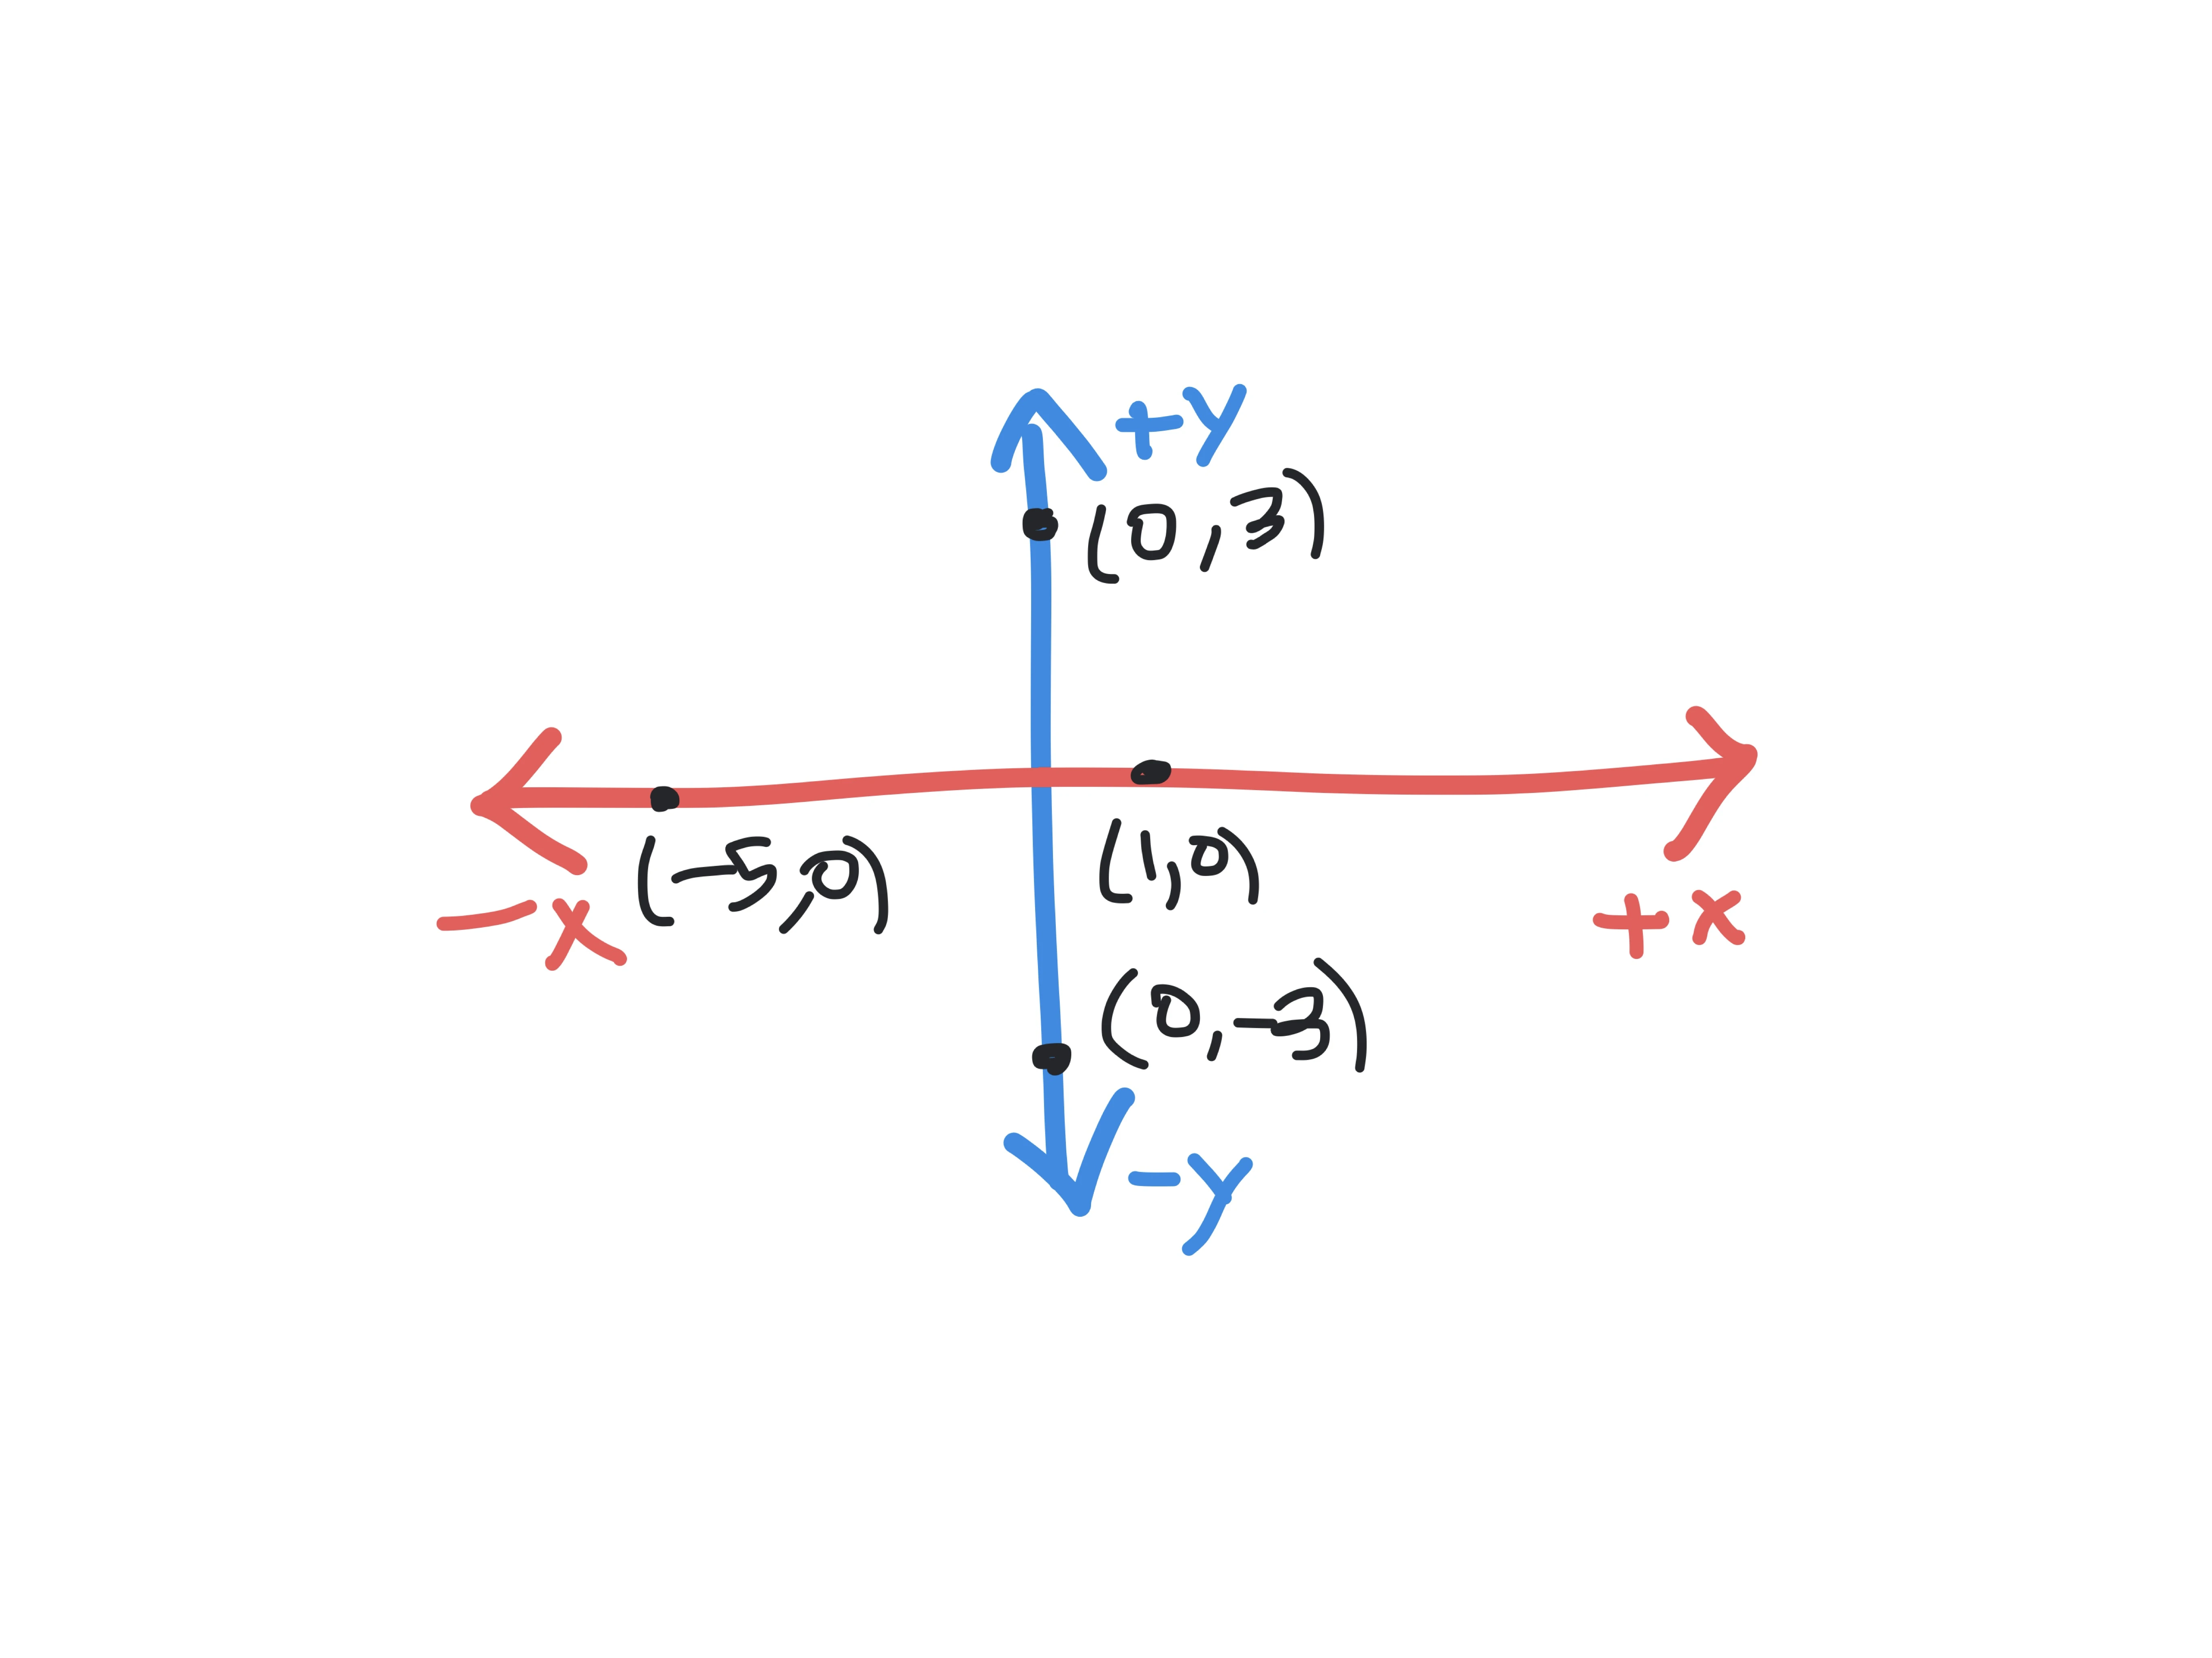 math quadrants